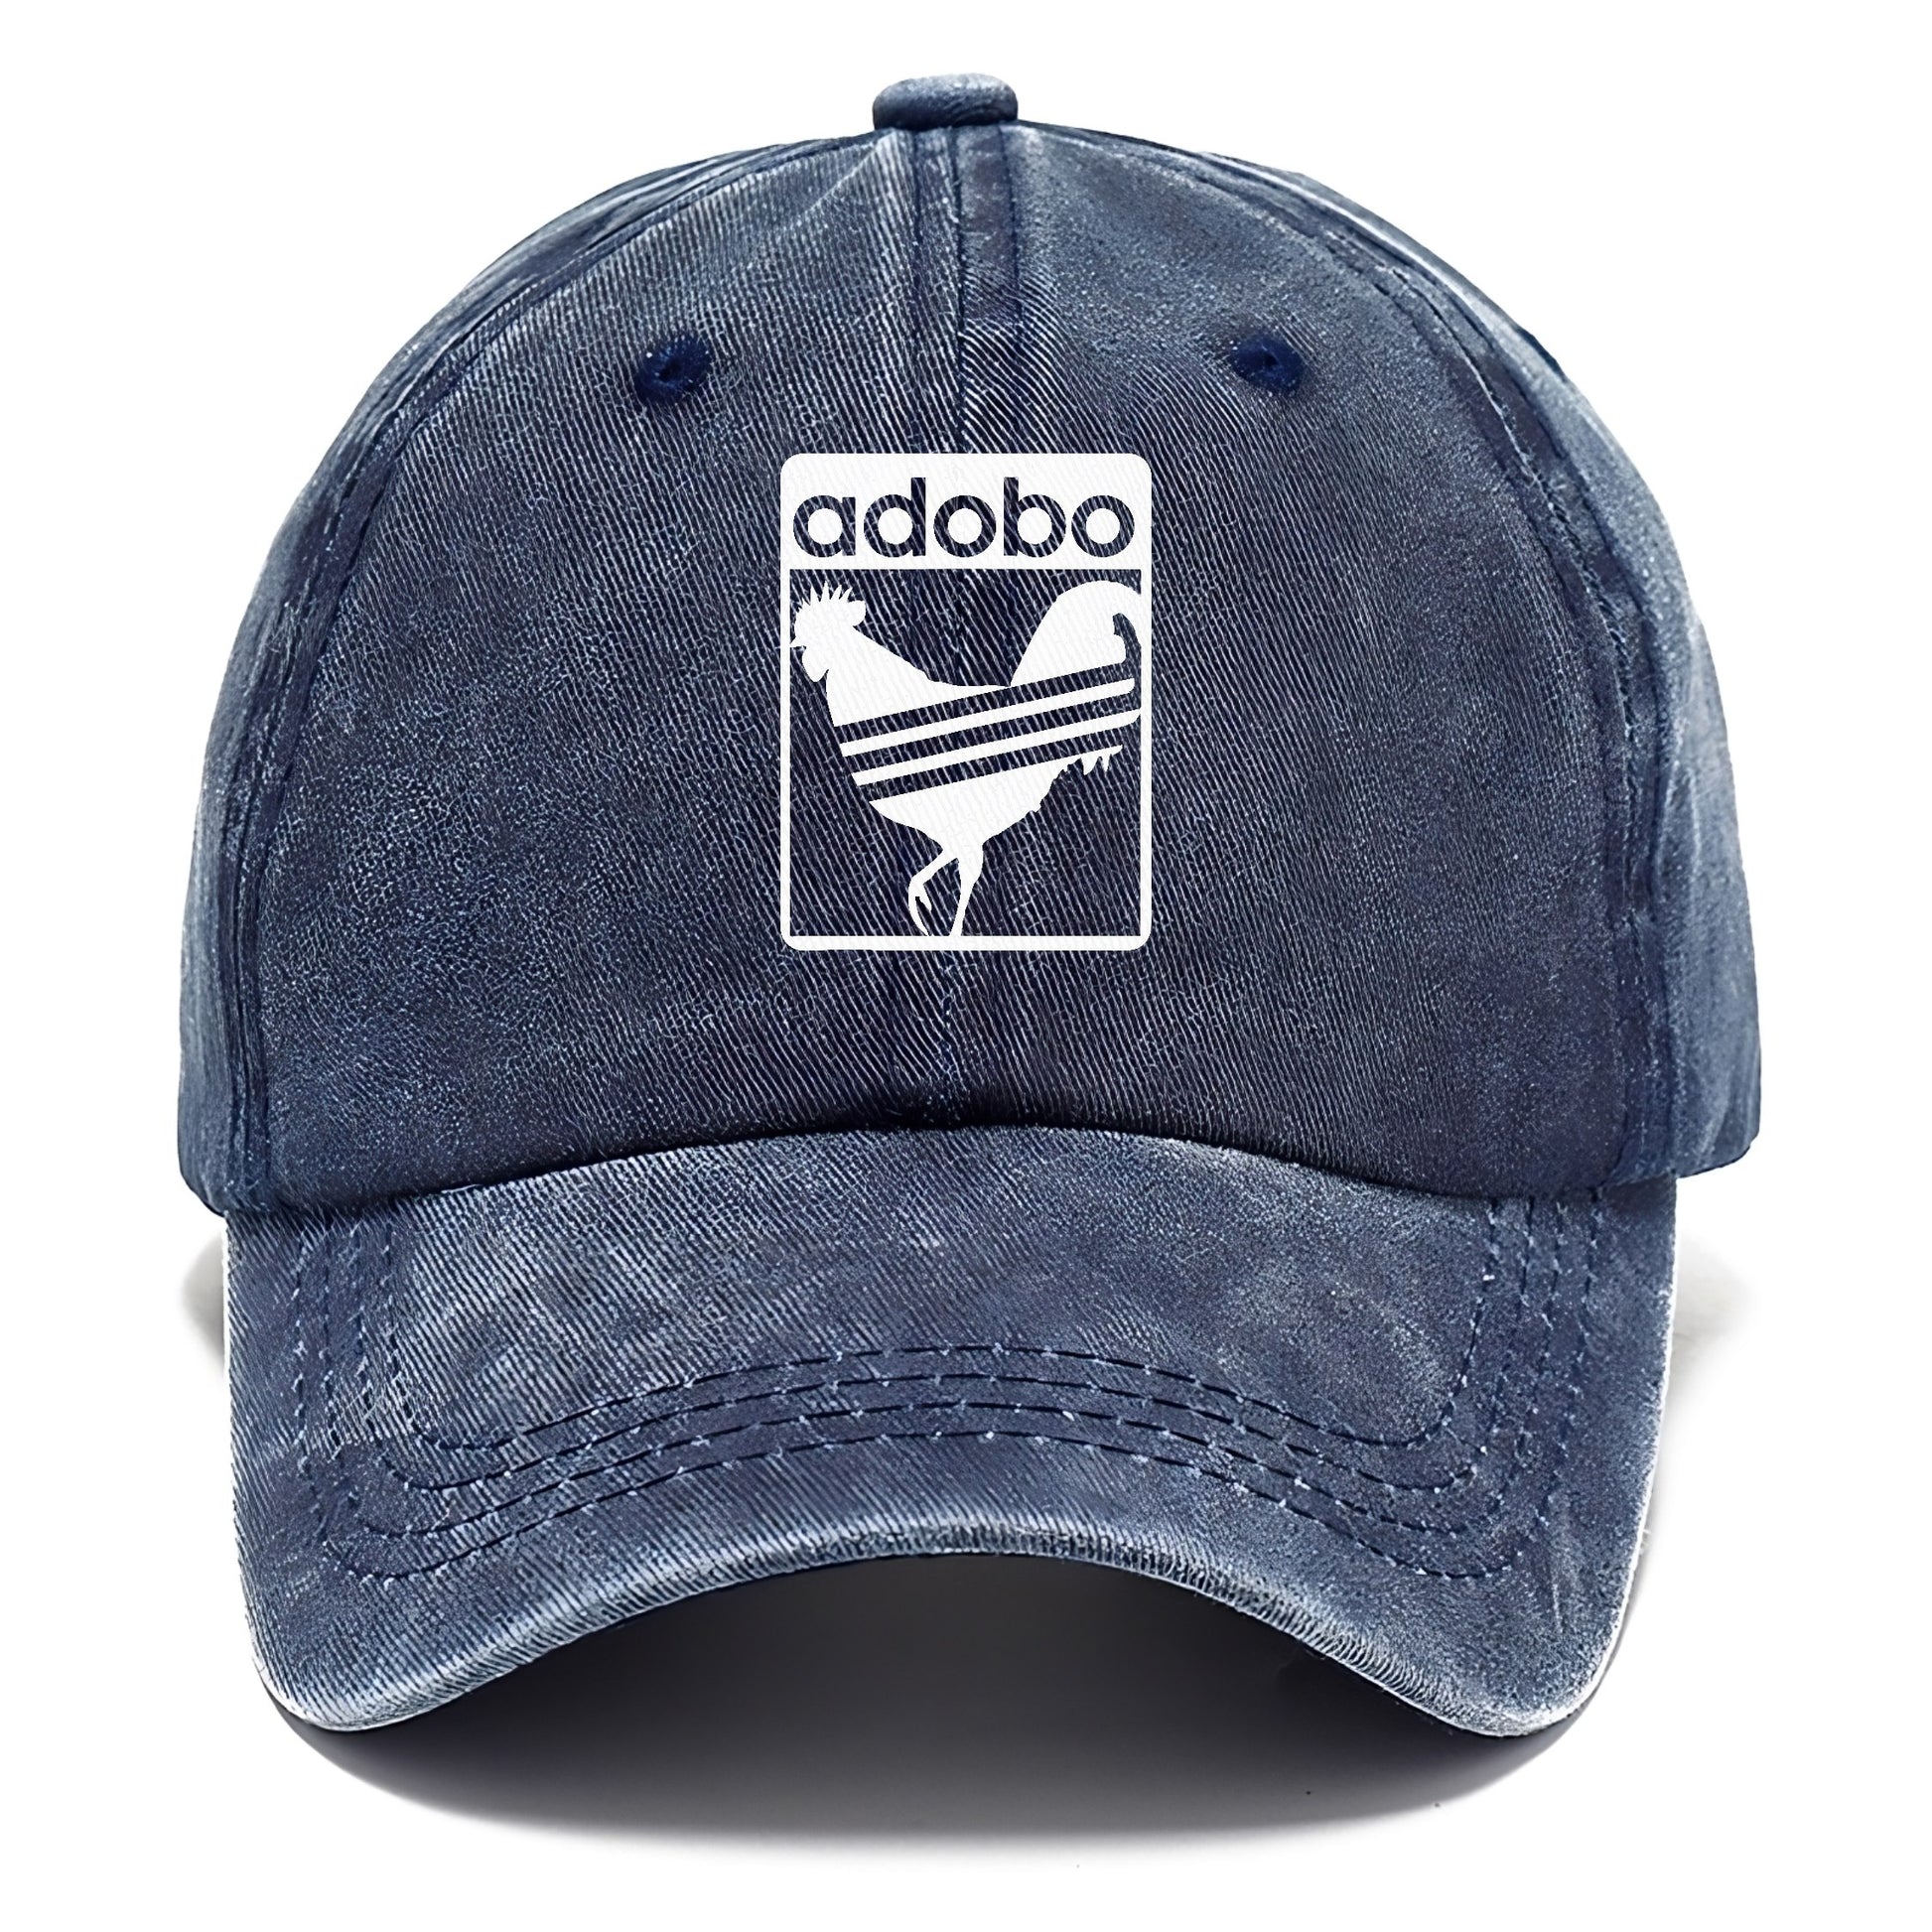 adobo! Hat